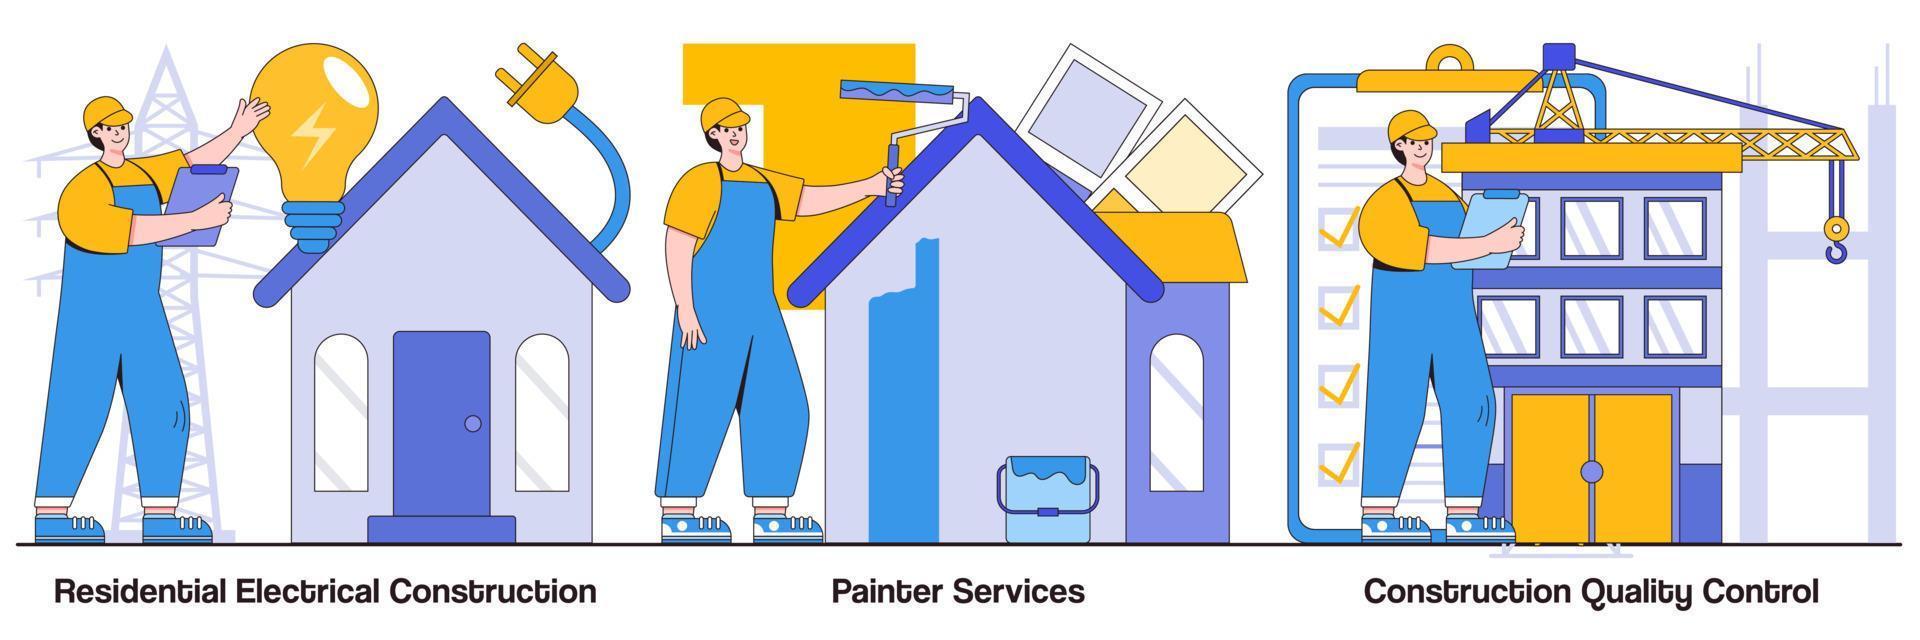 residentiële elektrische constructie, schildersdiensten, bouwkwaliteitscontrole met illustratiespakket voor personenkarakters vector